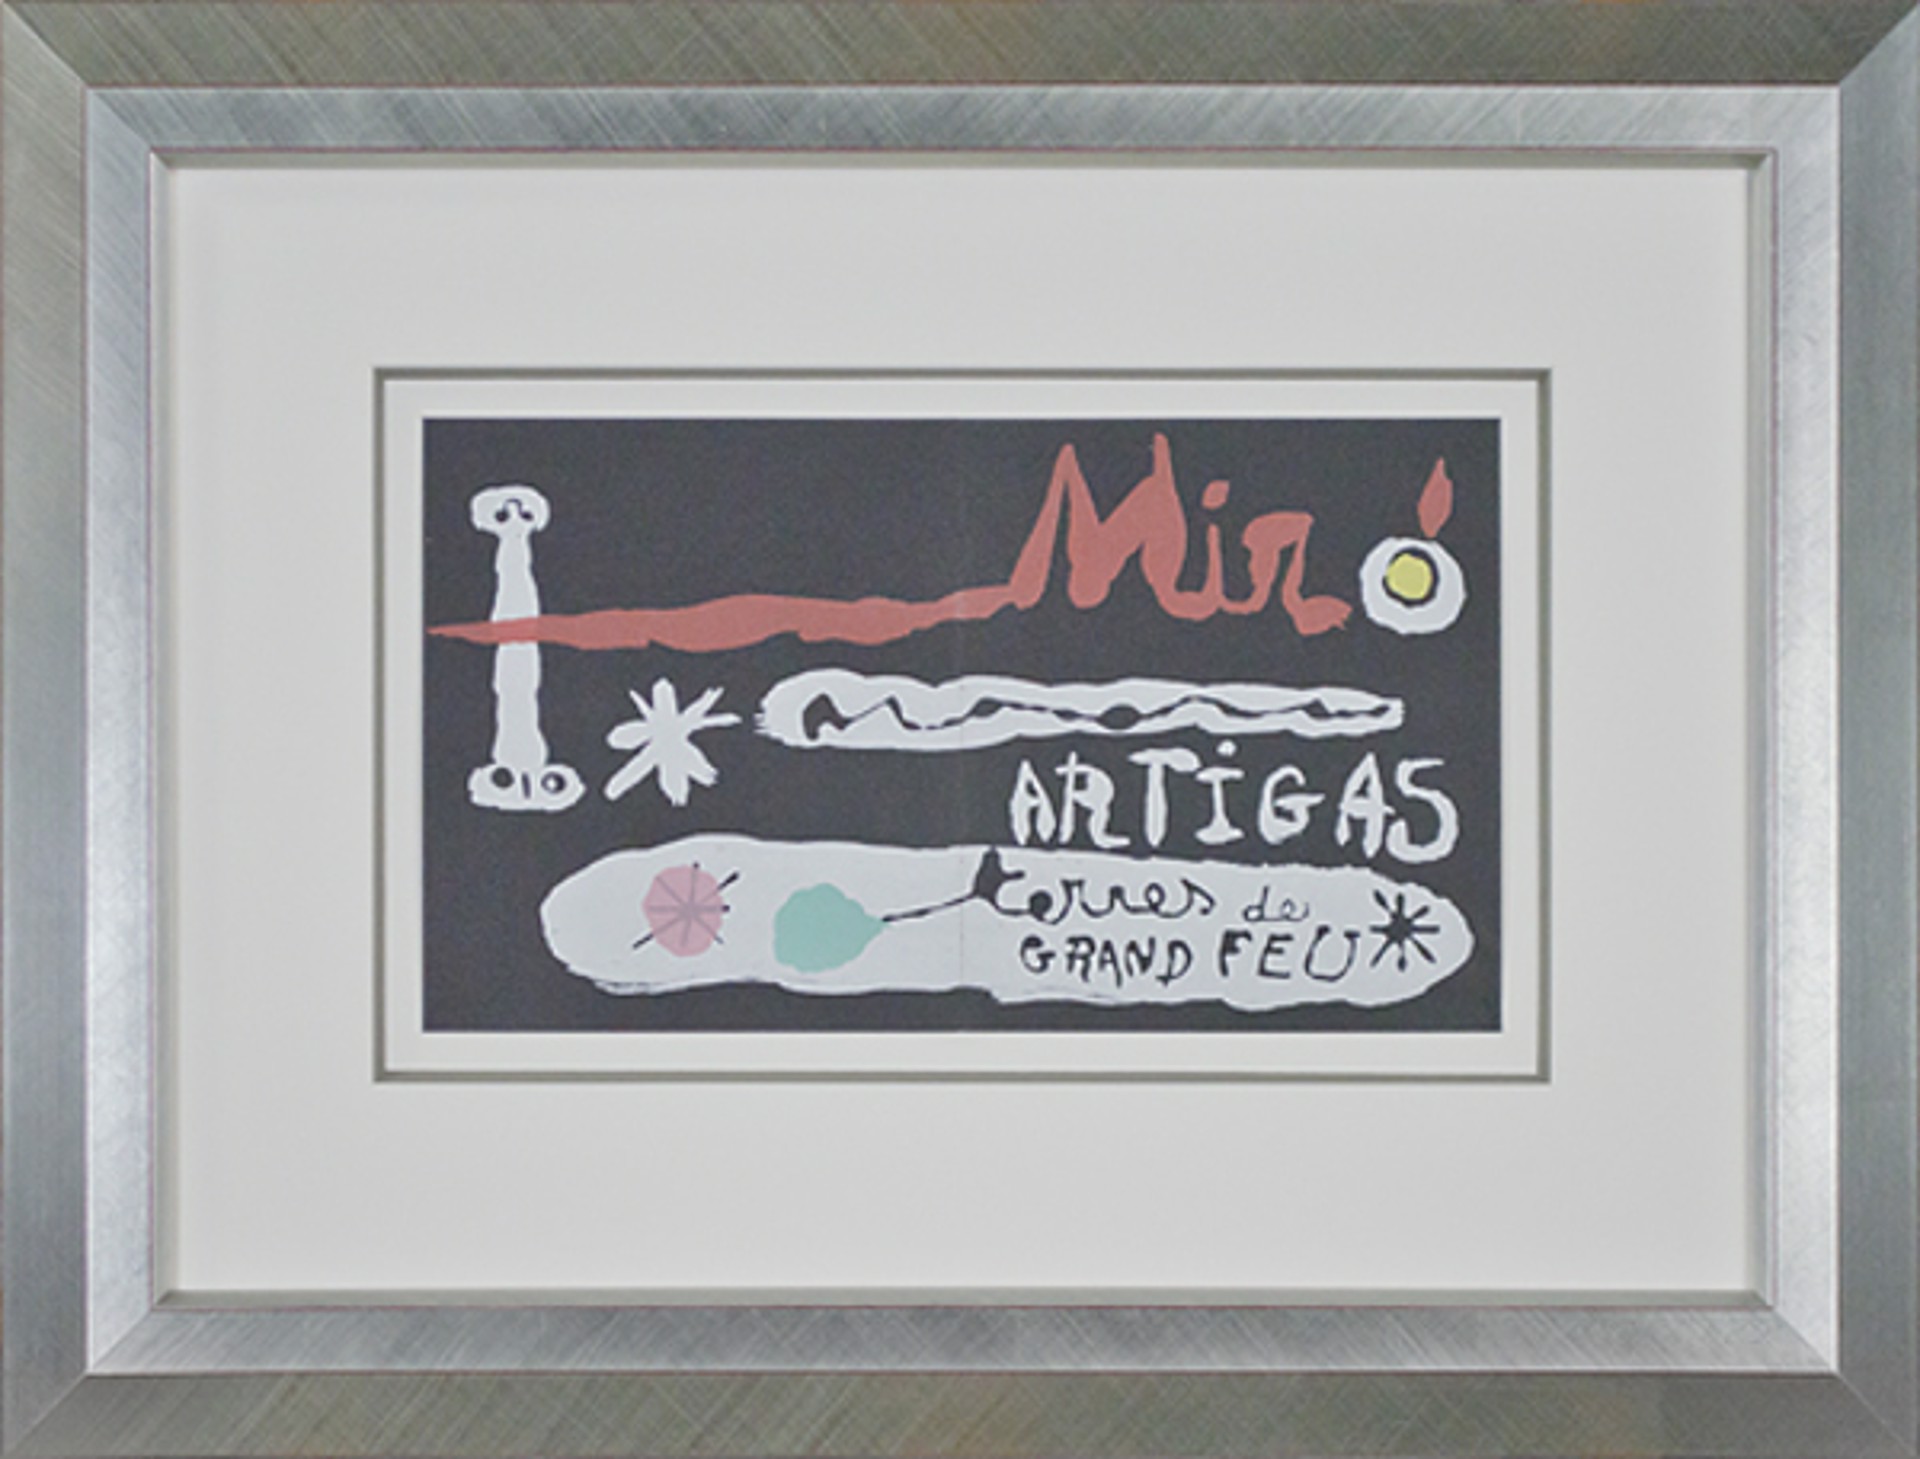 Miro & Artigas - Sculpture in Ceramic Terres de Grand Feu by Joan Miró